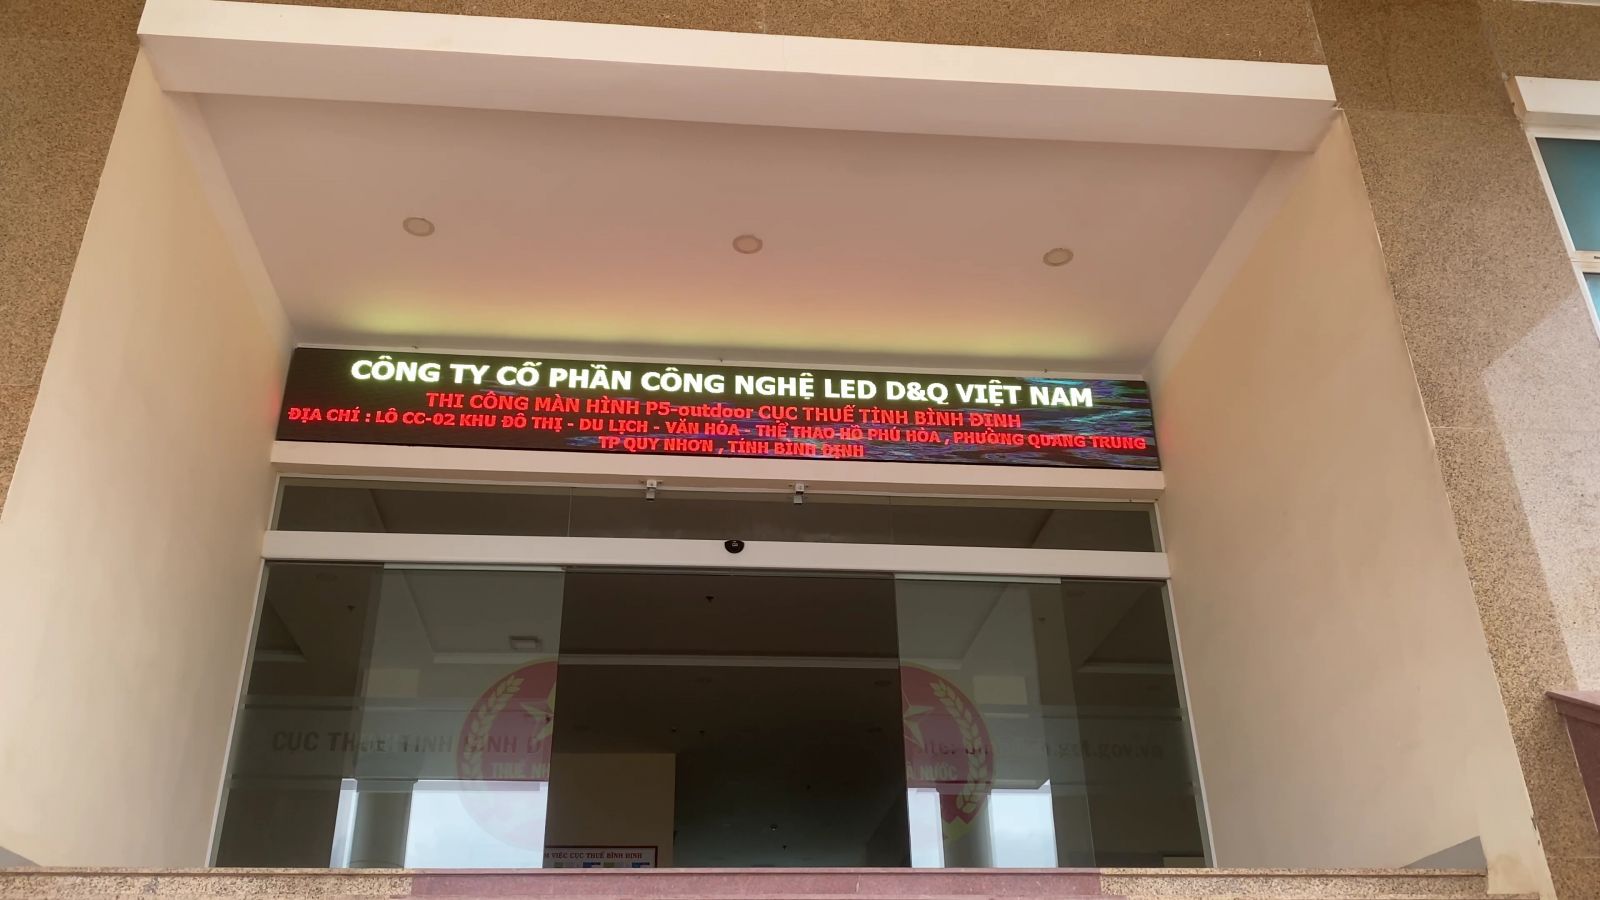 Lắp màn hình LED P5 Ngoài Trời tại Cục thuế tỉnh Bình Định.